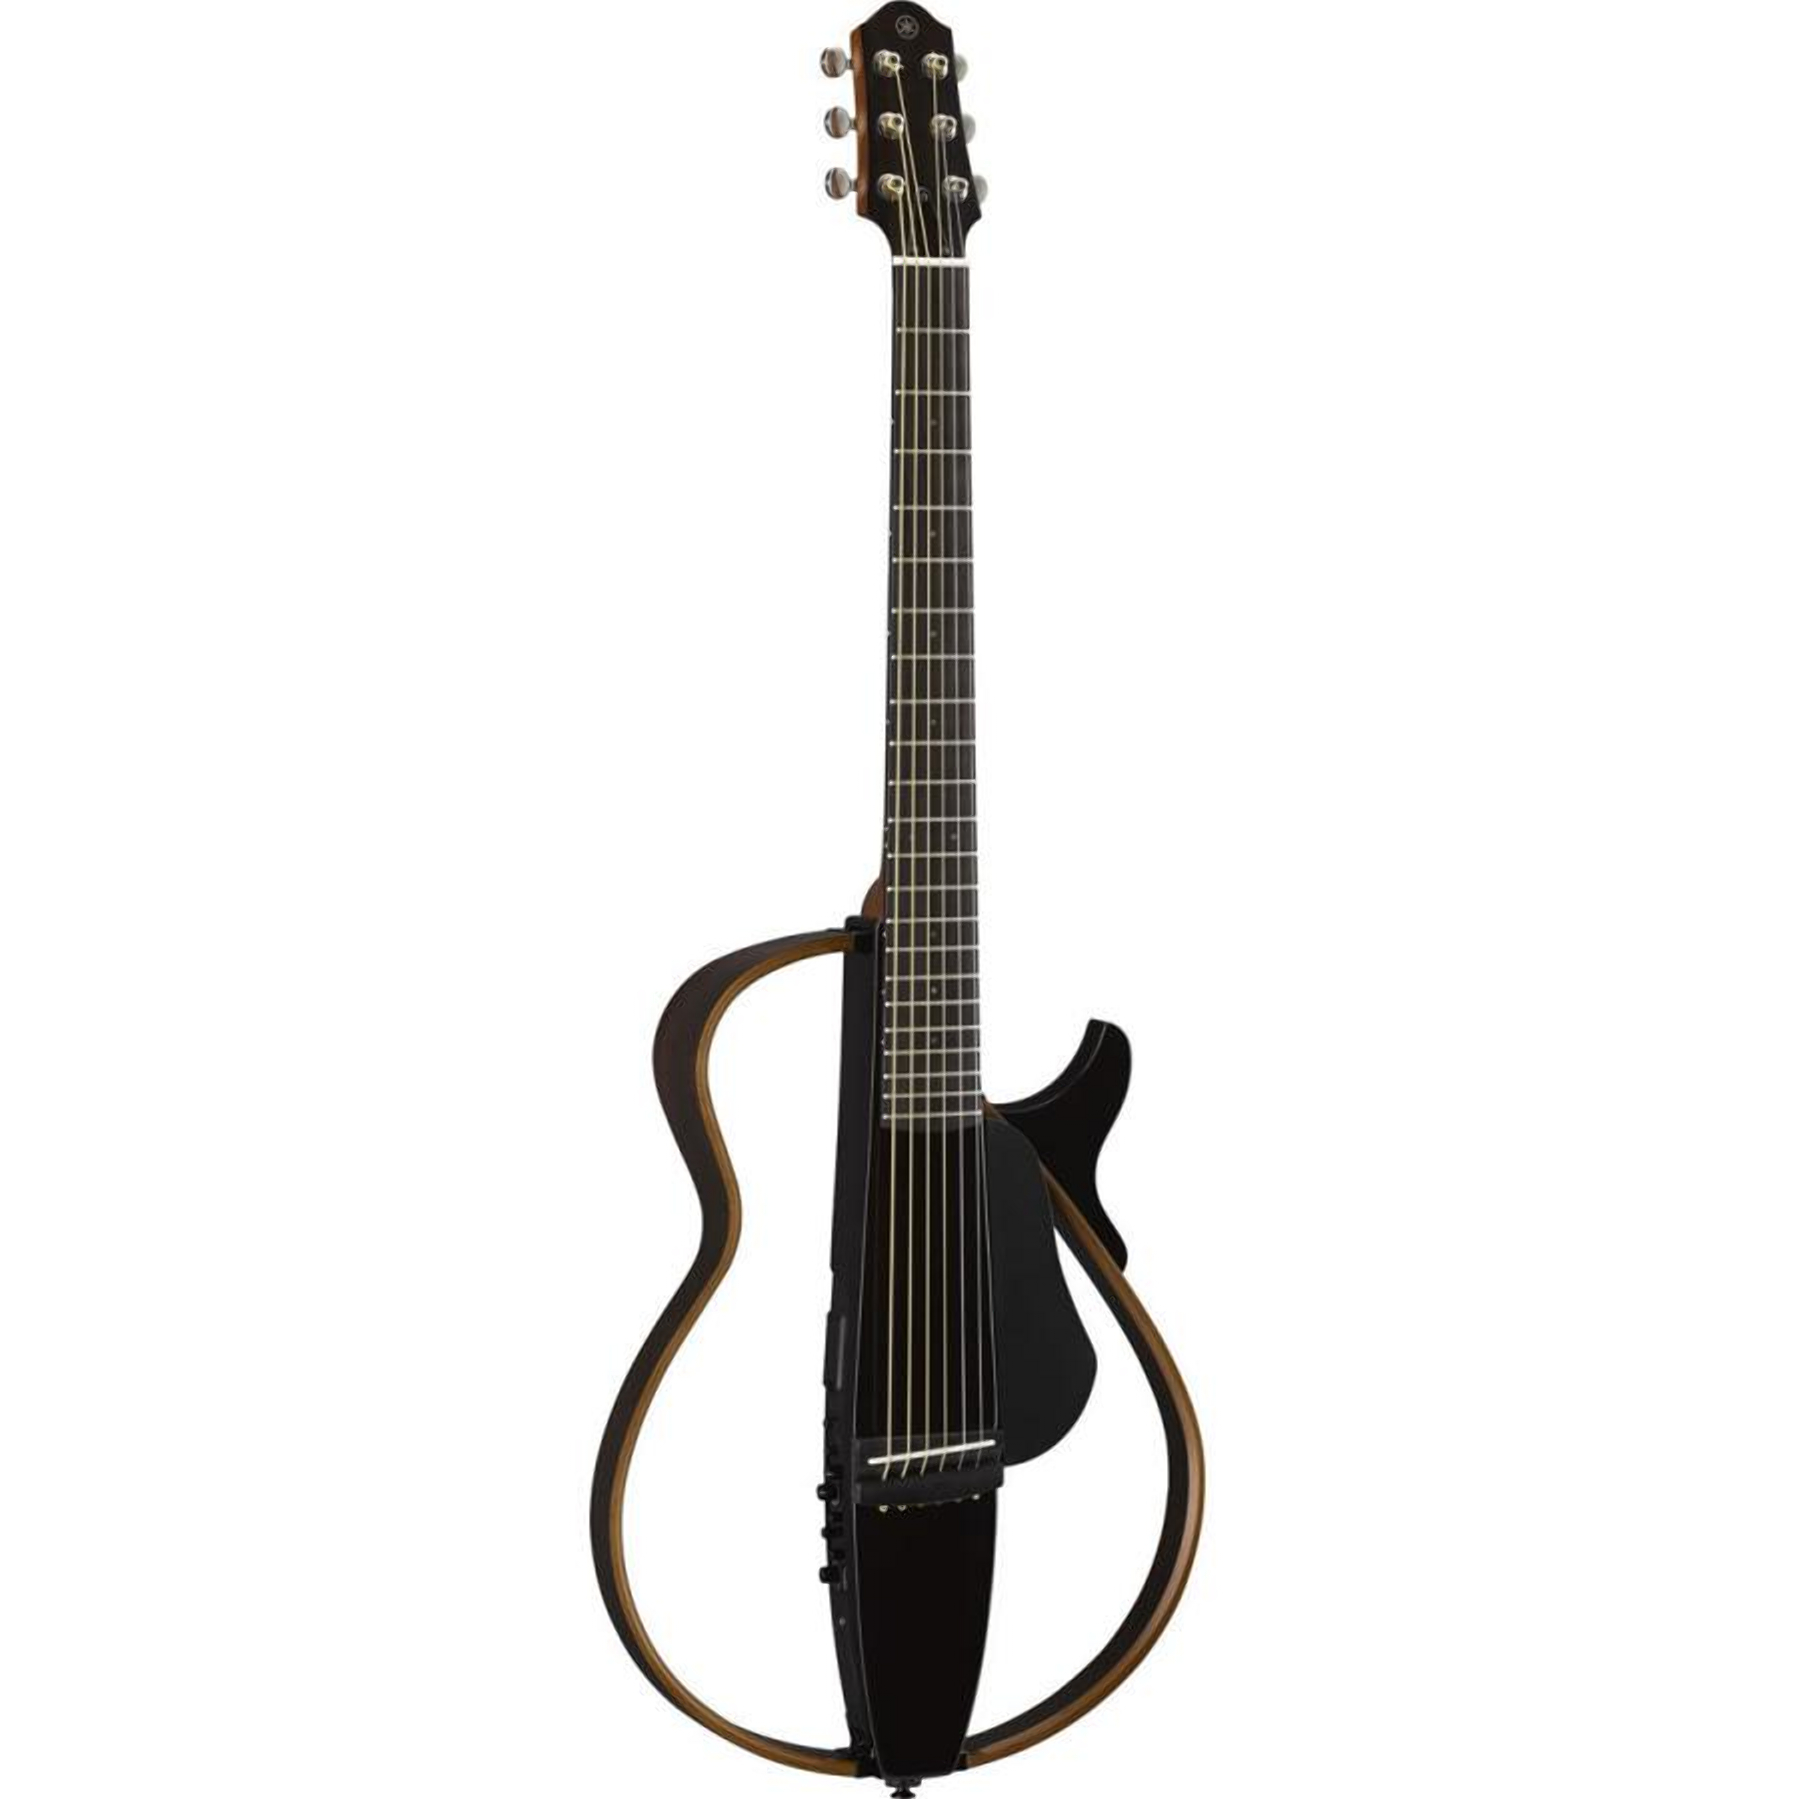 Электроакустические гитары Yamaha SLG200S TBL 6 шт комплект 0 028 0 043 классическая гитара струны nylon два а нормальный напряжение